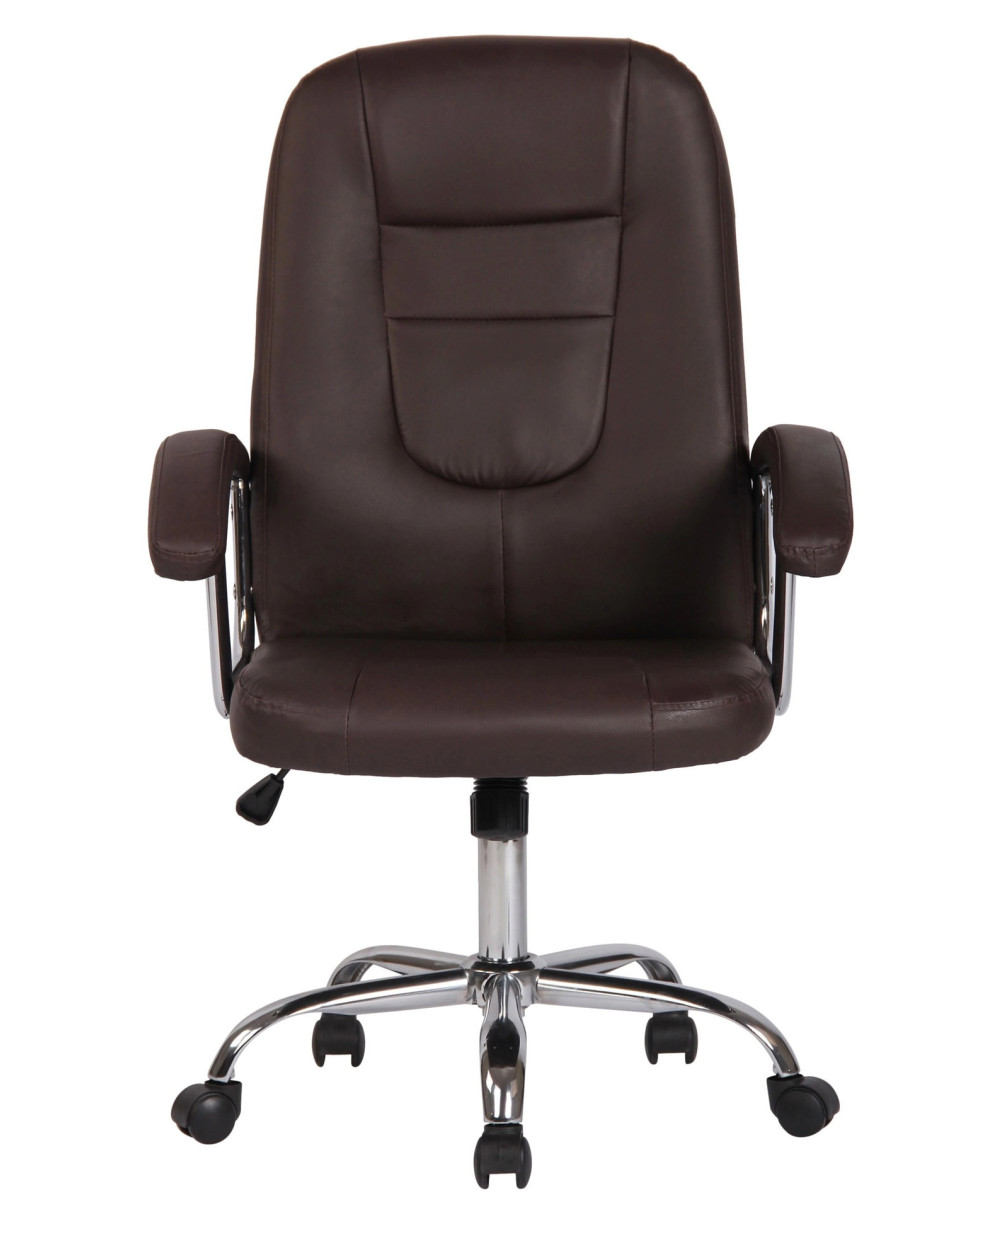 Cadeira Porto DUDECO - Material da estrutura: Aço cromado
Material do assento: Tecido
Largura total: 44 cm
Profundidade total: 6